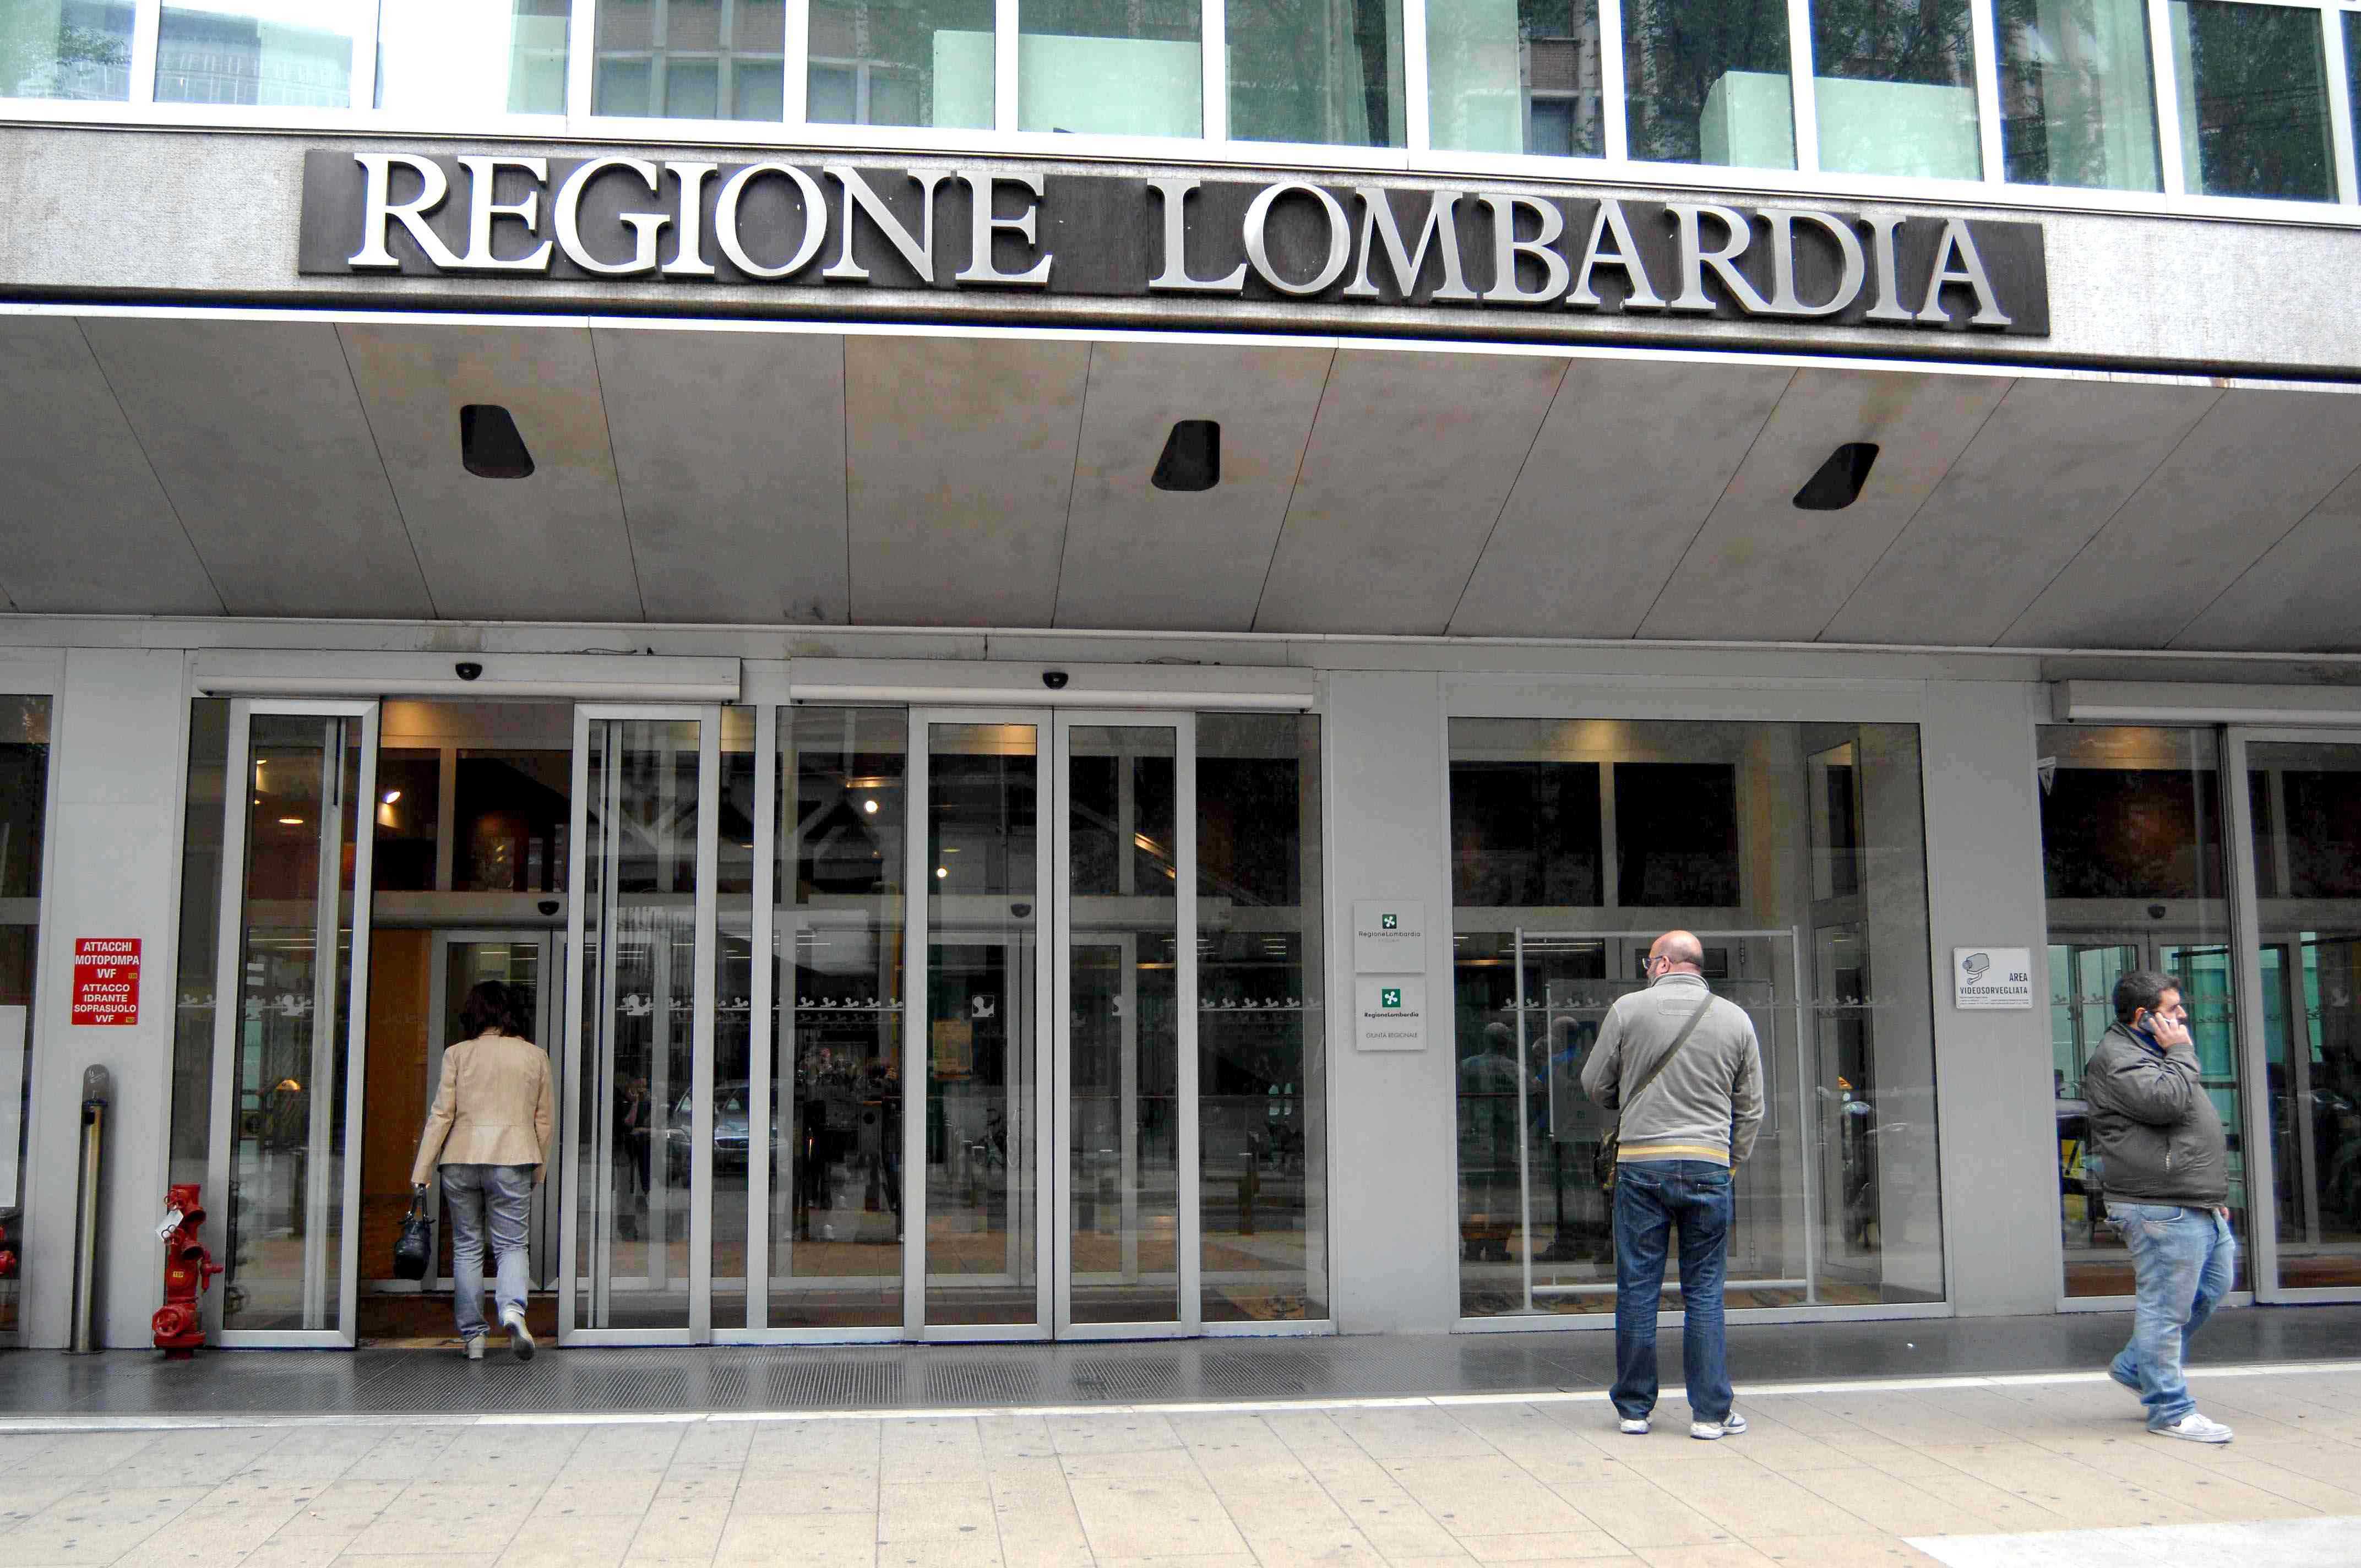 Regione Lombardia: rating BBB e outlook negativo da S&P